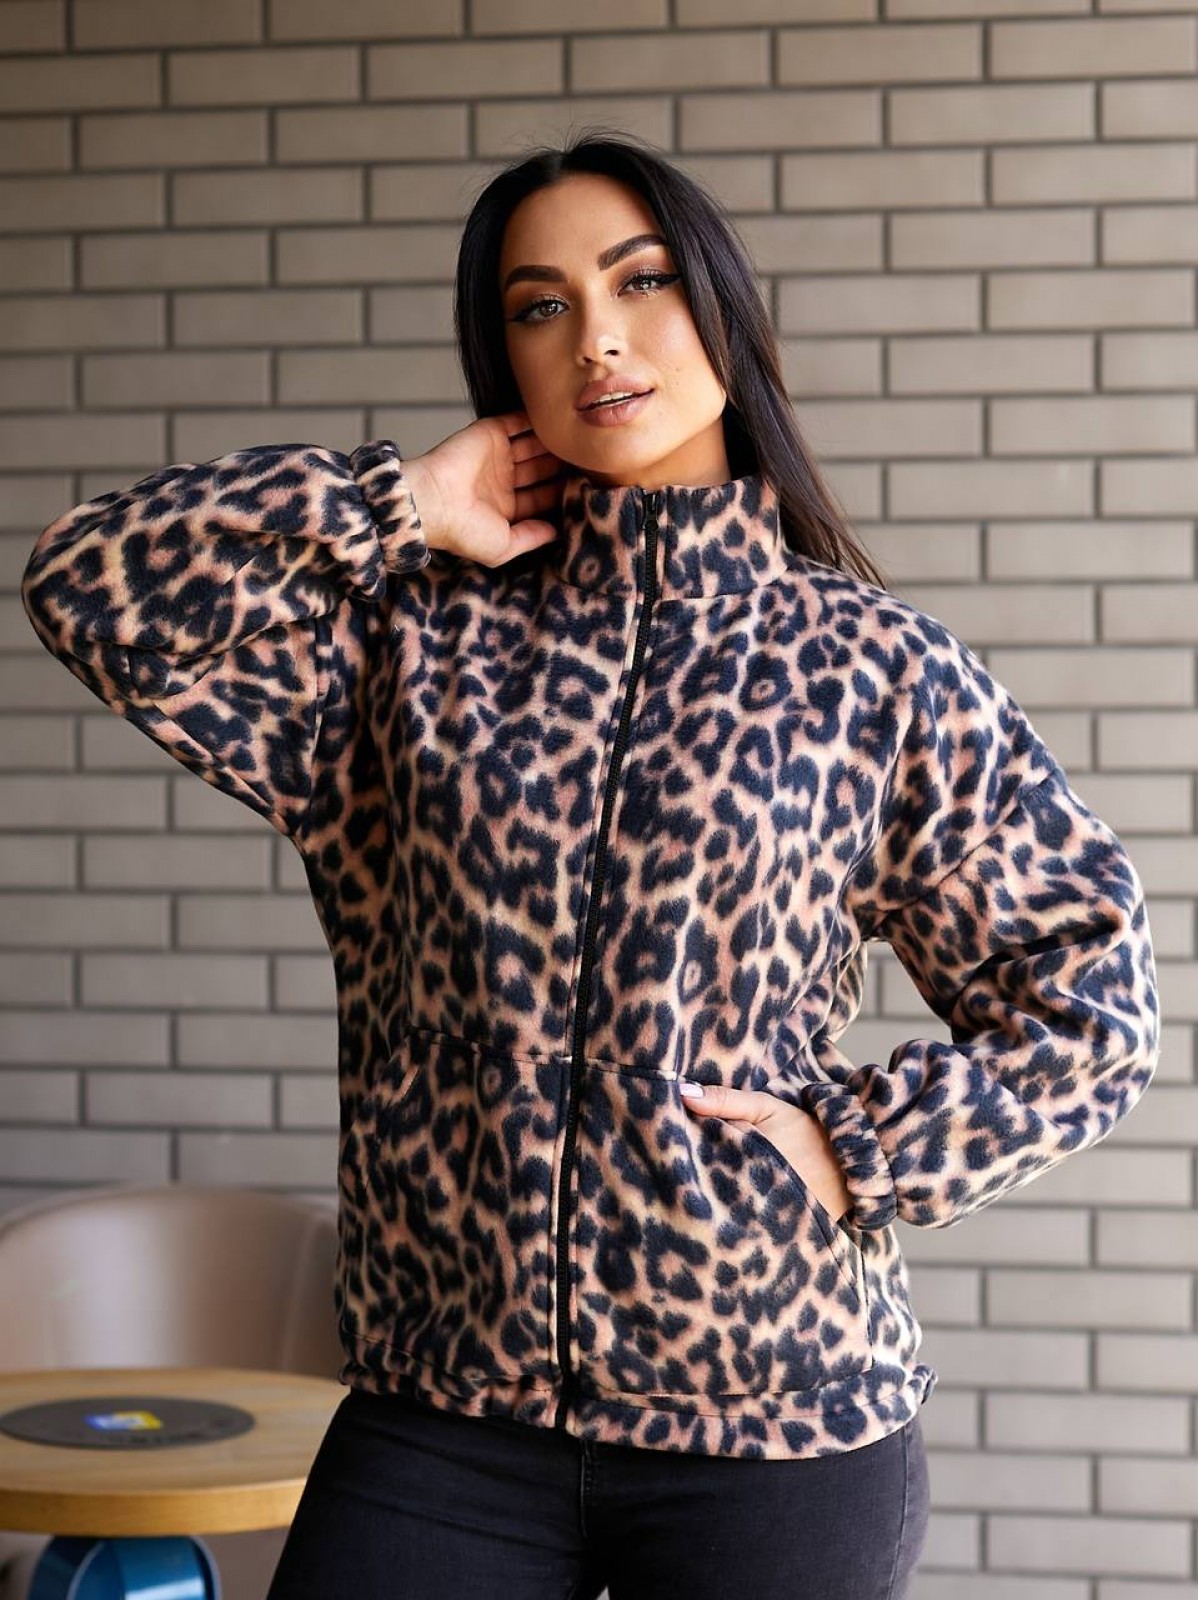 Жіноча кофта-куртка колір коричневий принт леопард р.52/56 443296